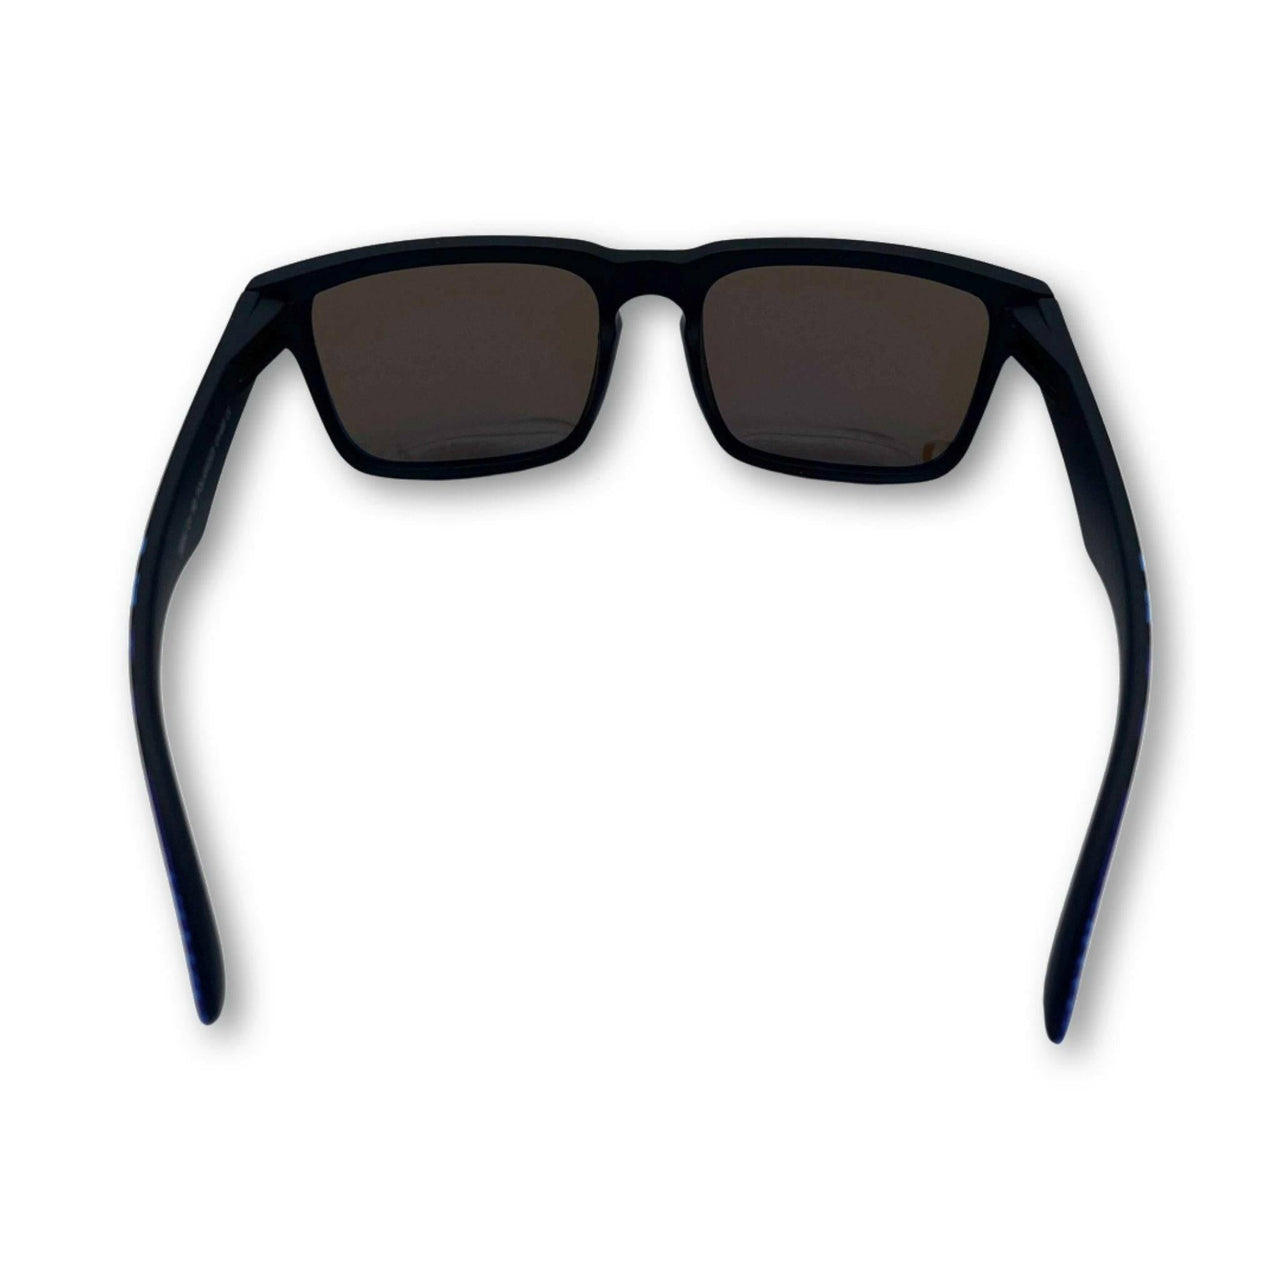 Hustler 90's Sunglasses